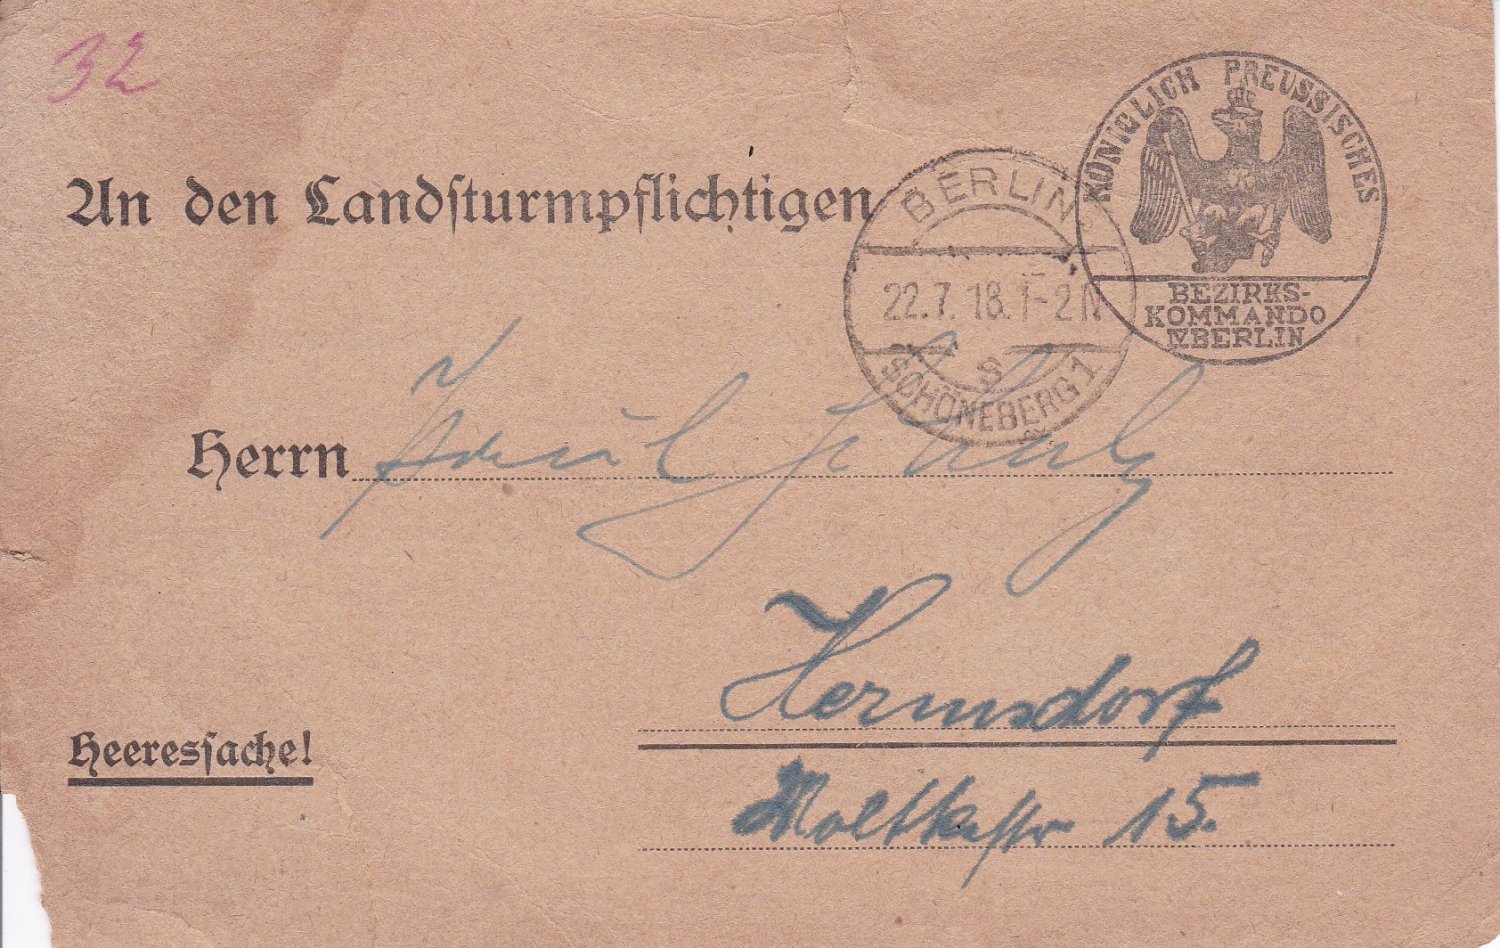 Königlich Preussisches Bezirkskommando Berlin (Herausgeber):  An den Landsturmpflichtigen. Heeressache! (Militärischer Original-Befehl im Juli 1918). 